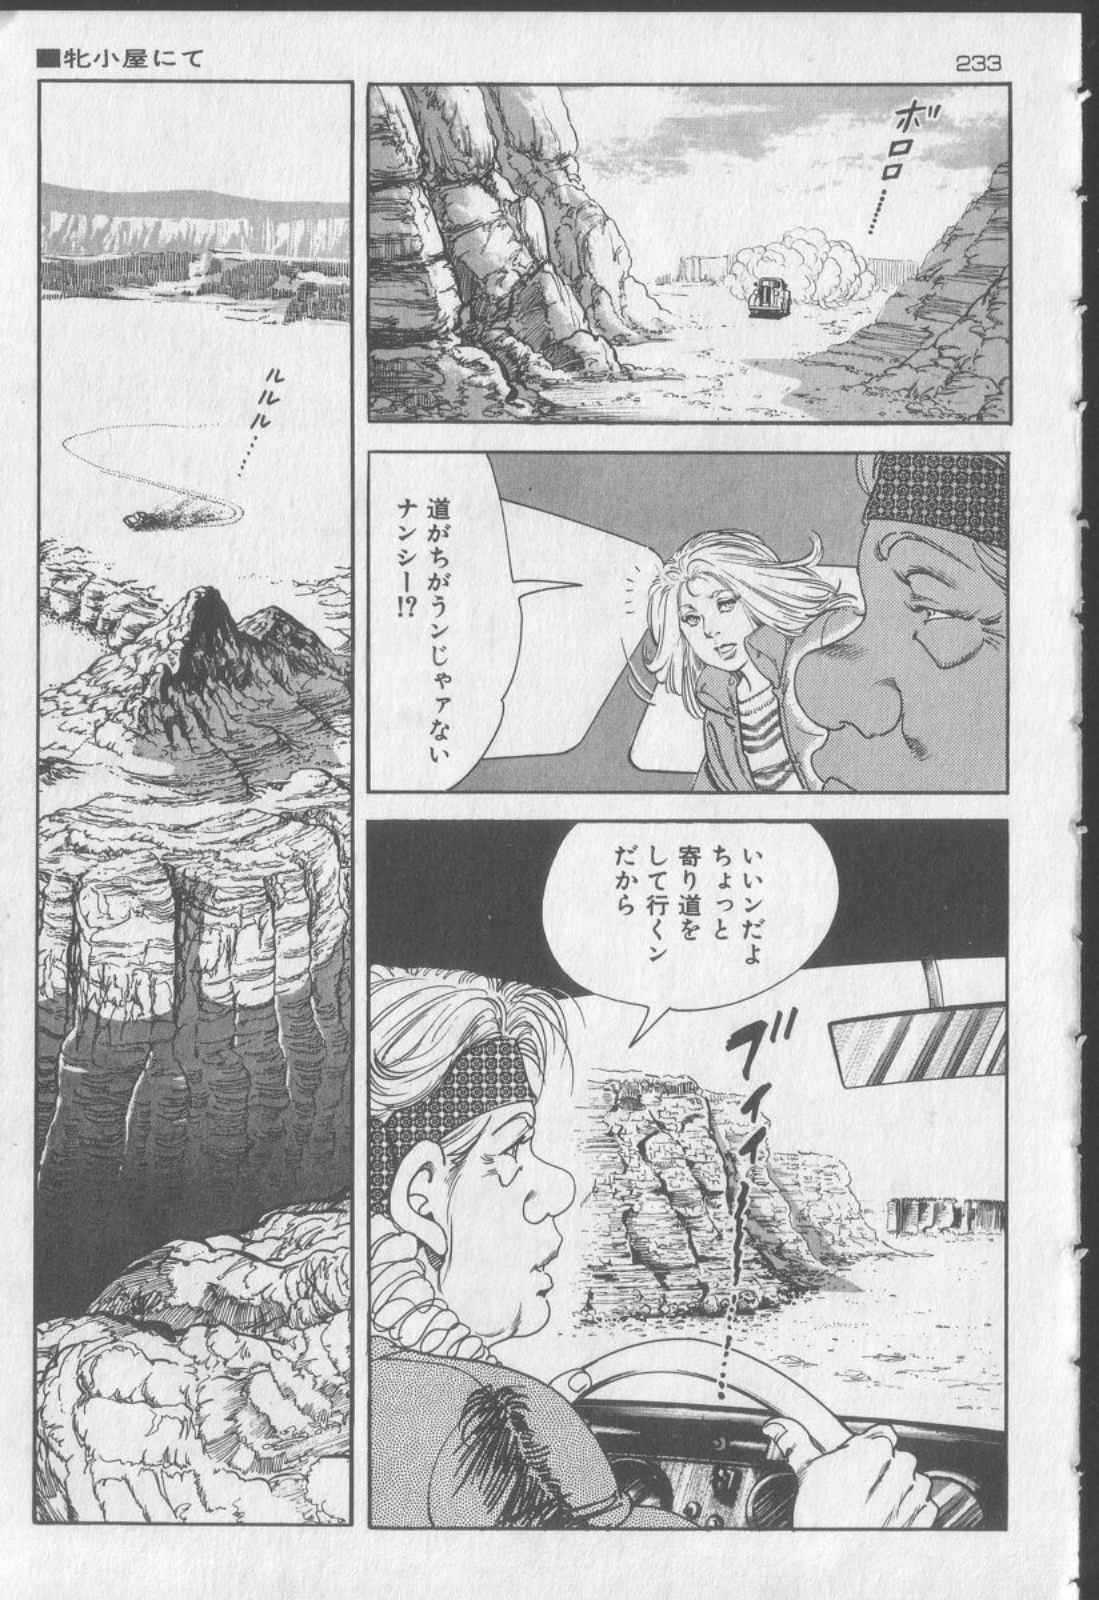 [Kano Seisaku, Koike Kazuo] Jikken Ningyou Dummy Oscar Vol.13 [叶精作, 小池一夫] 実験人形ダミー・オスカー 第13巻